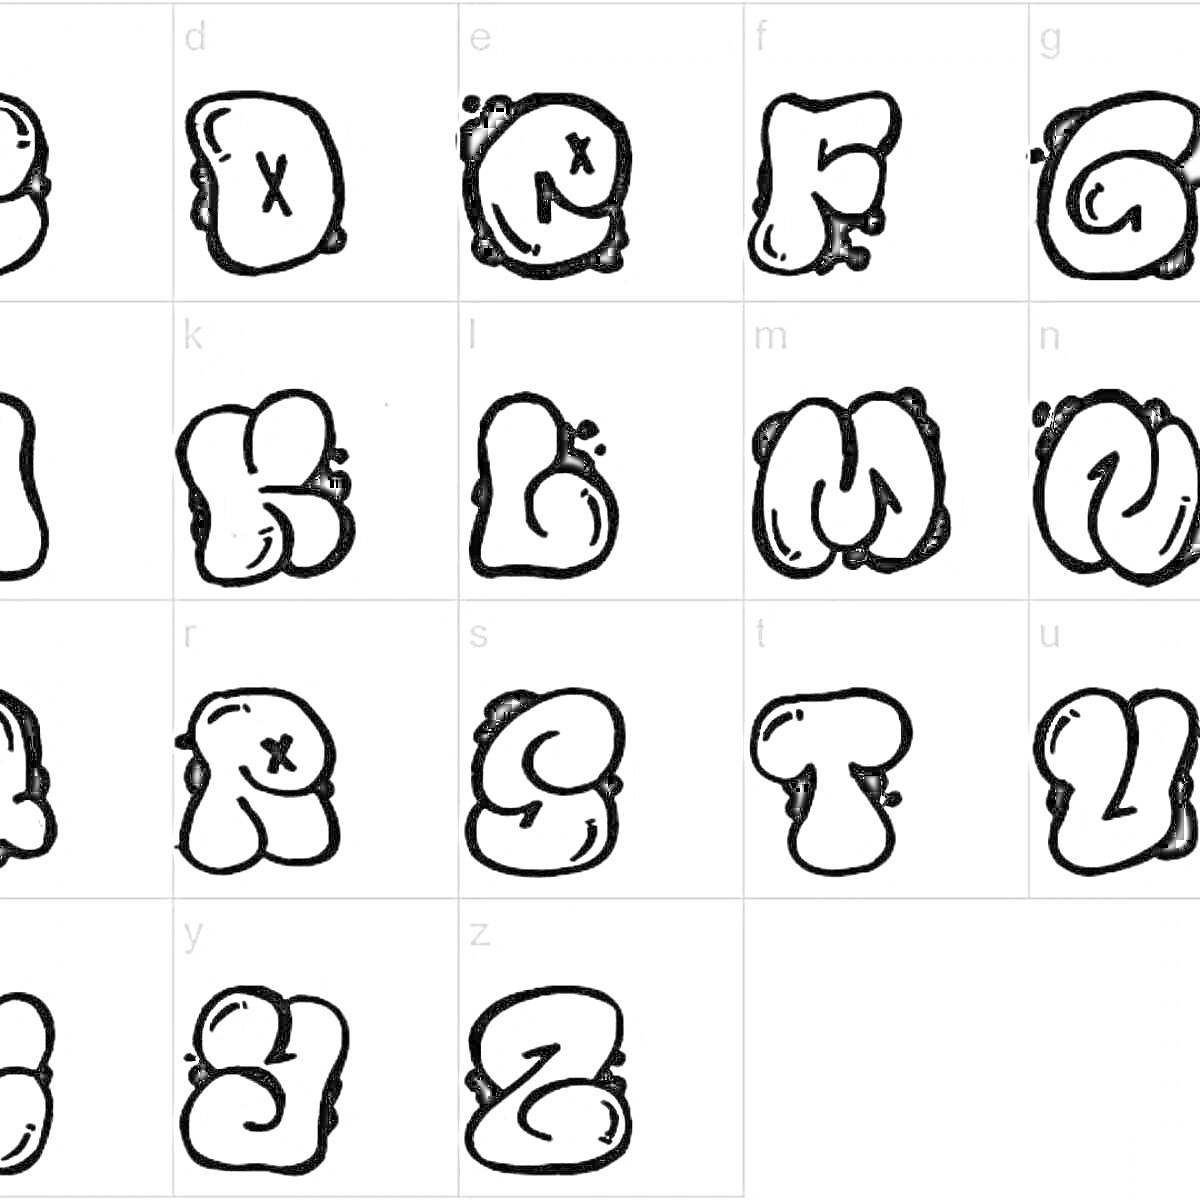 Раскраска Граффити алфавит с буквами от A до Z в черном контуре